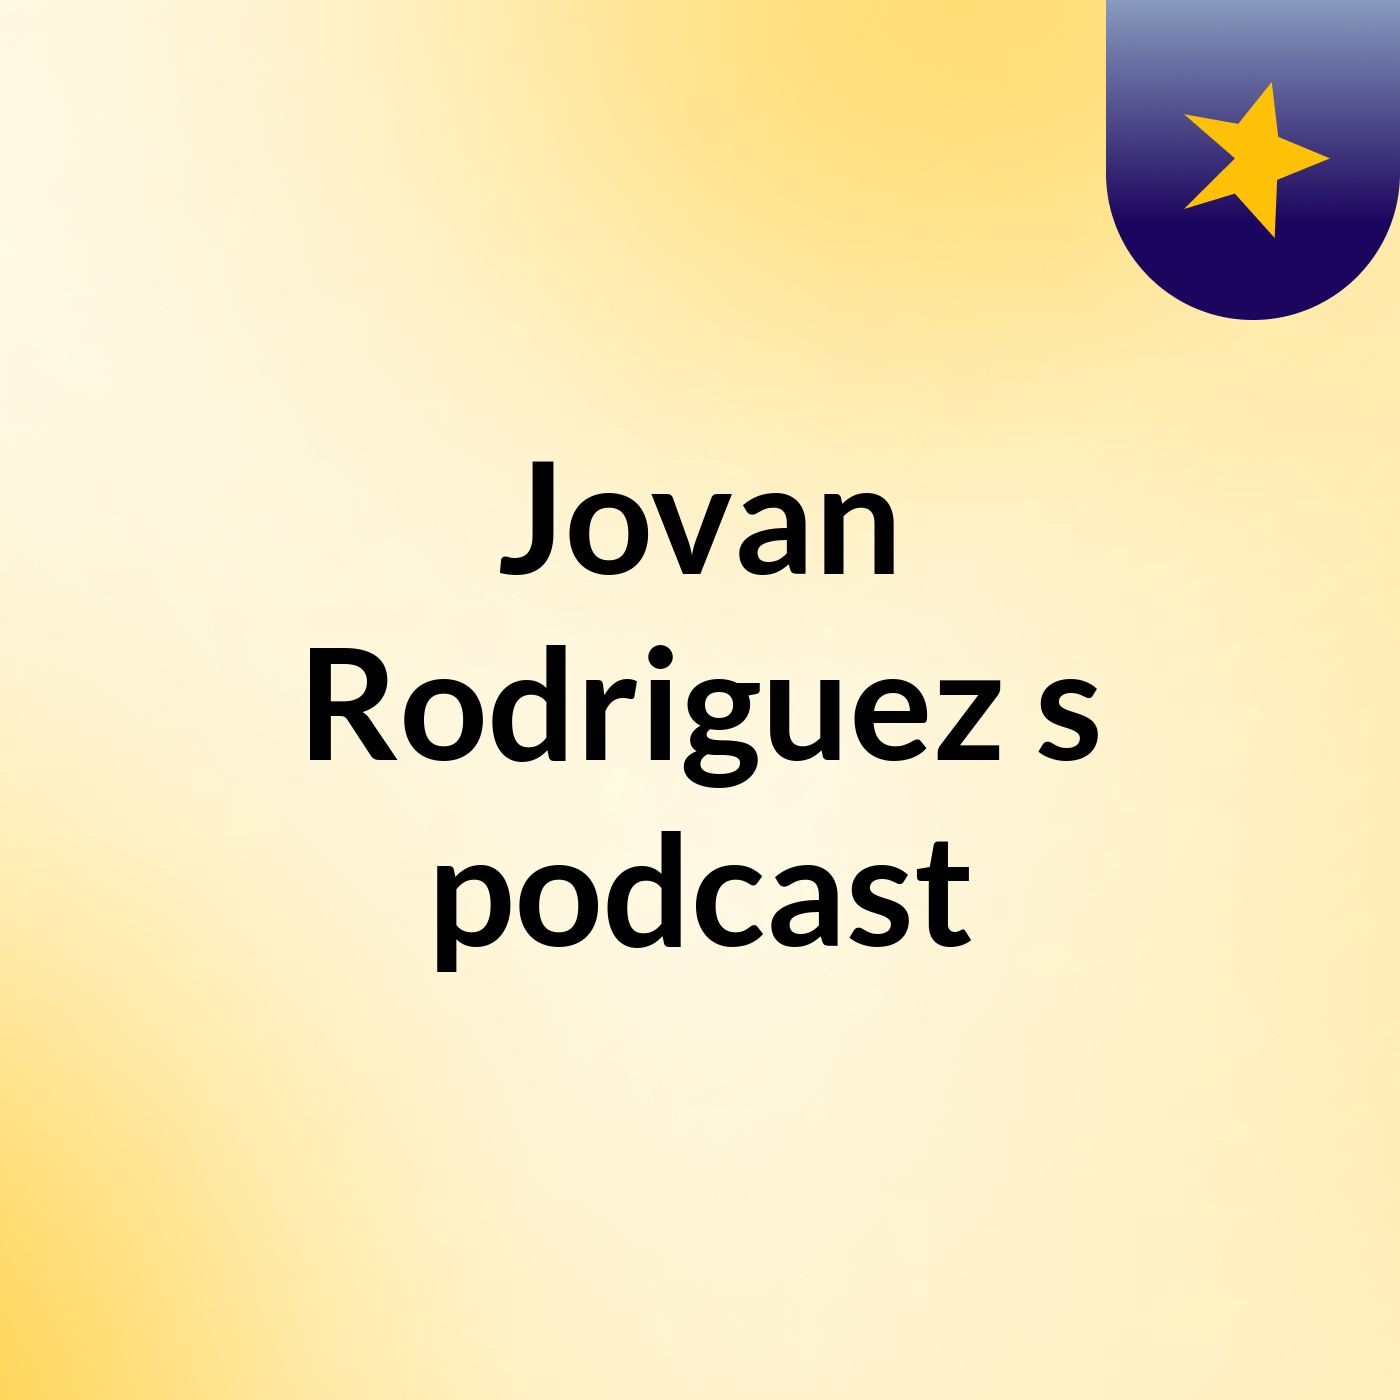 Jovan Rodriguez's podcast